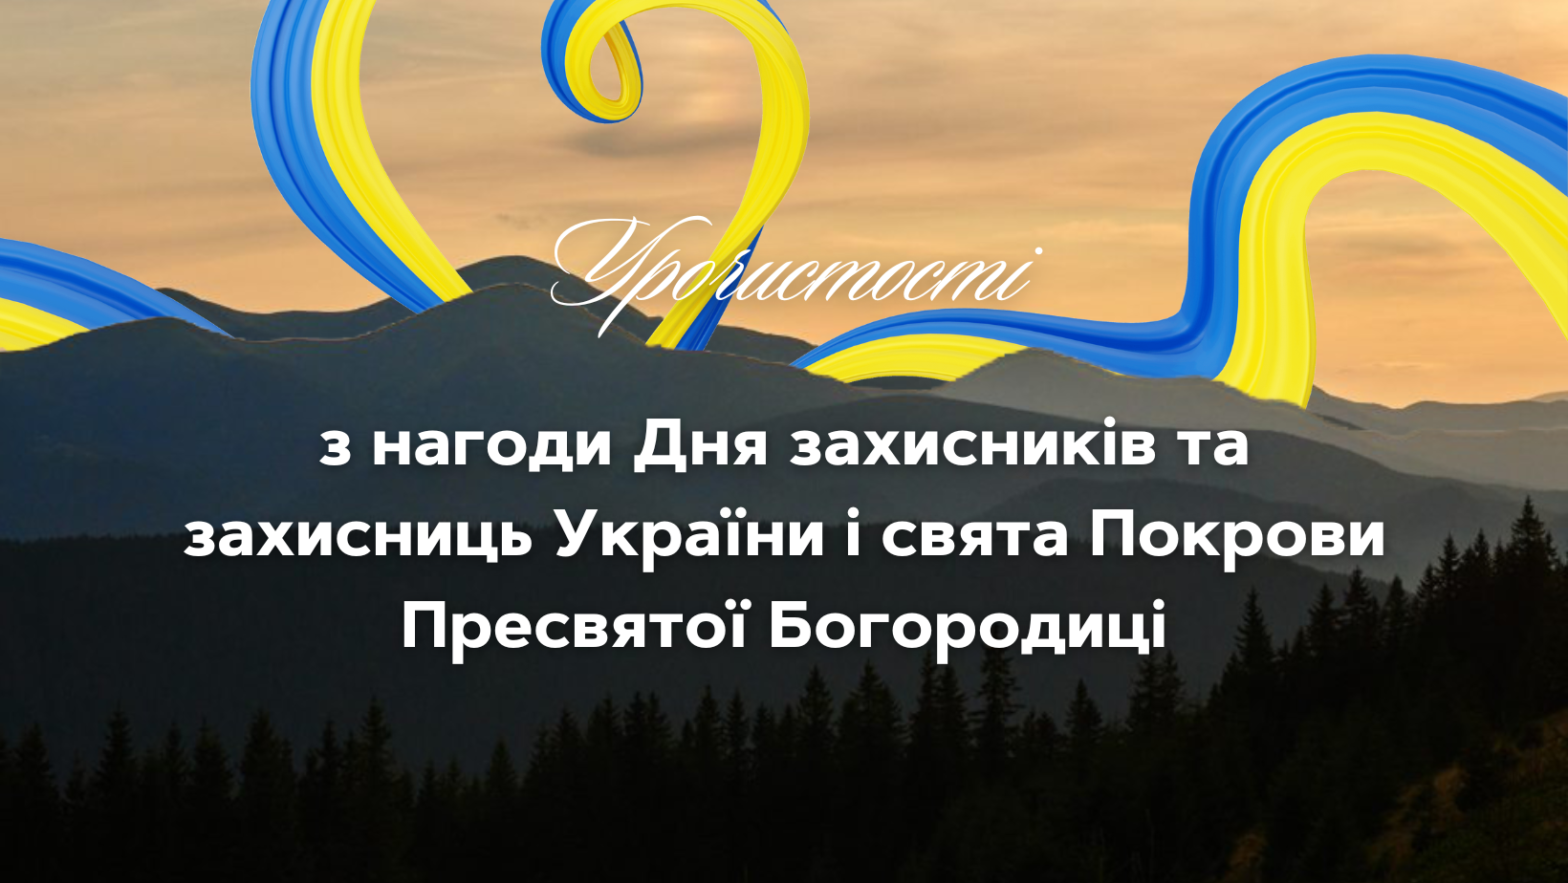 Програма урочистостей з нагоди Дня захисників та захисниць України і свята Покрови Пресвятої Богородиці